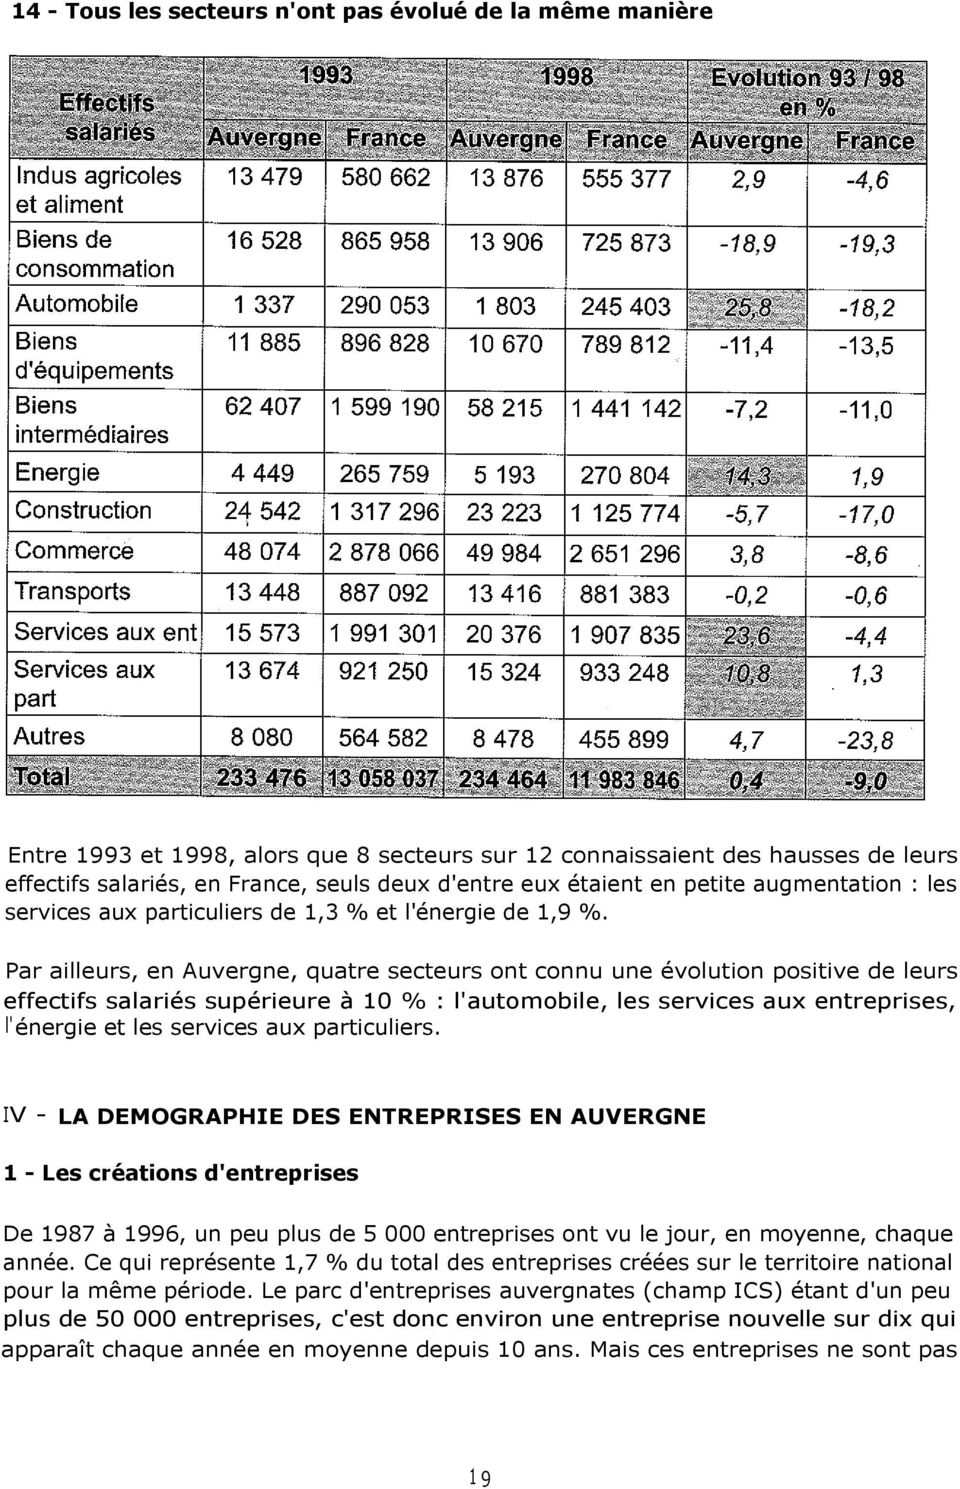 Par ailleurs, en Auvergne, quatre secteurs ont connu une évolution positive de leurs effectifs salariés supérieure à 10 % : l'automobile, les services aux entreprises, l'énergie et les services aux